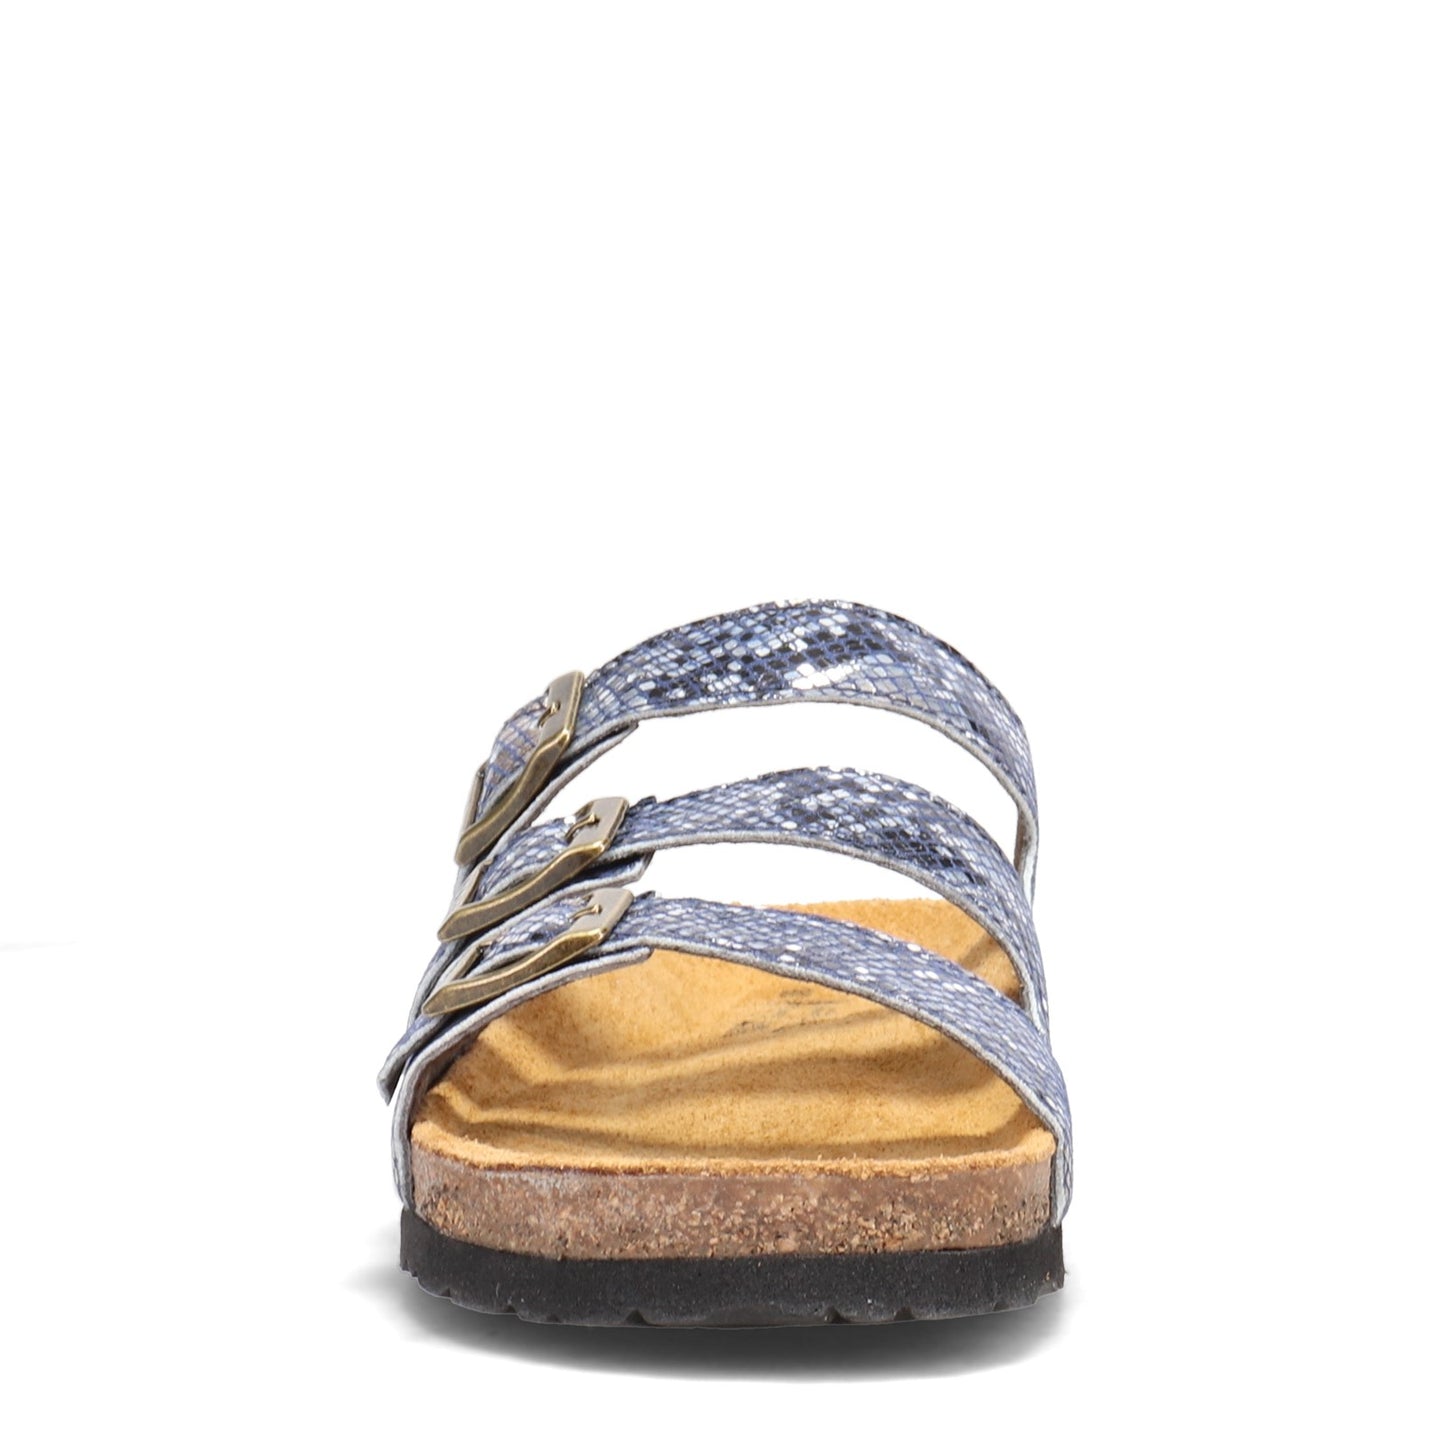 Peltz Shoes  Women's Naot Austin Sandal NAVY SNAKE 8700-D79